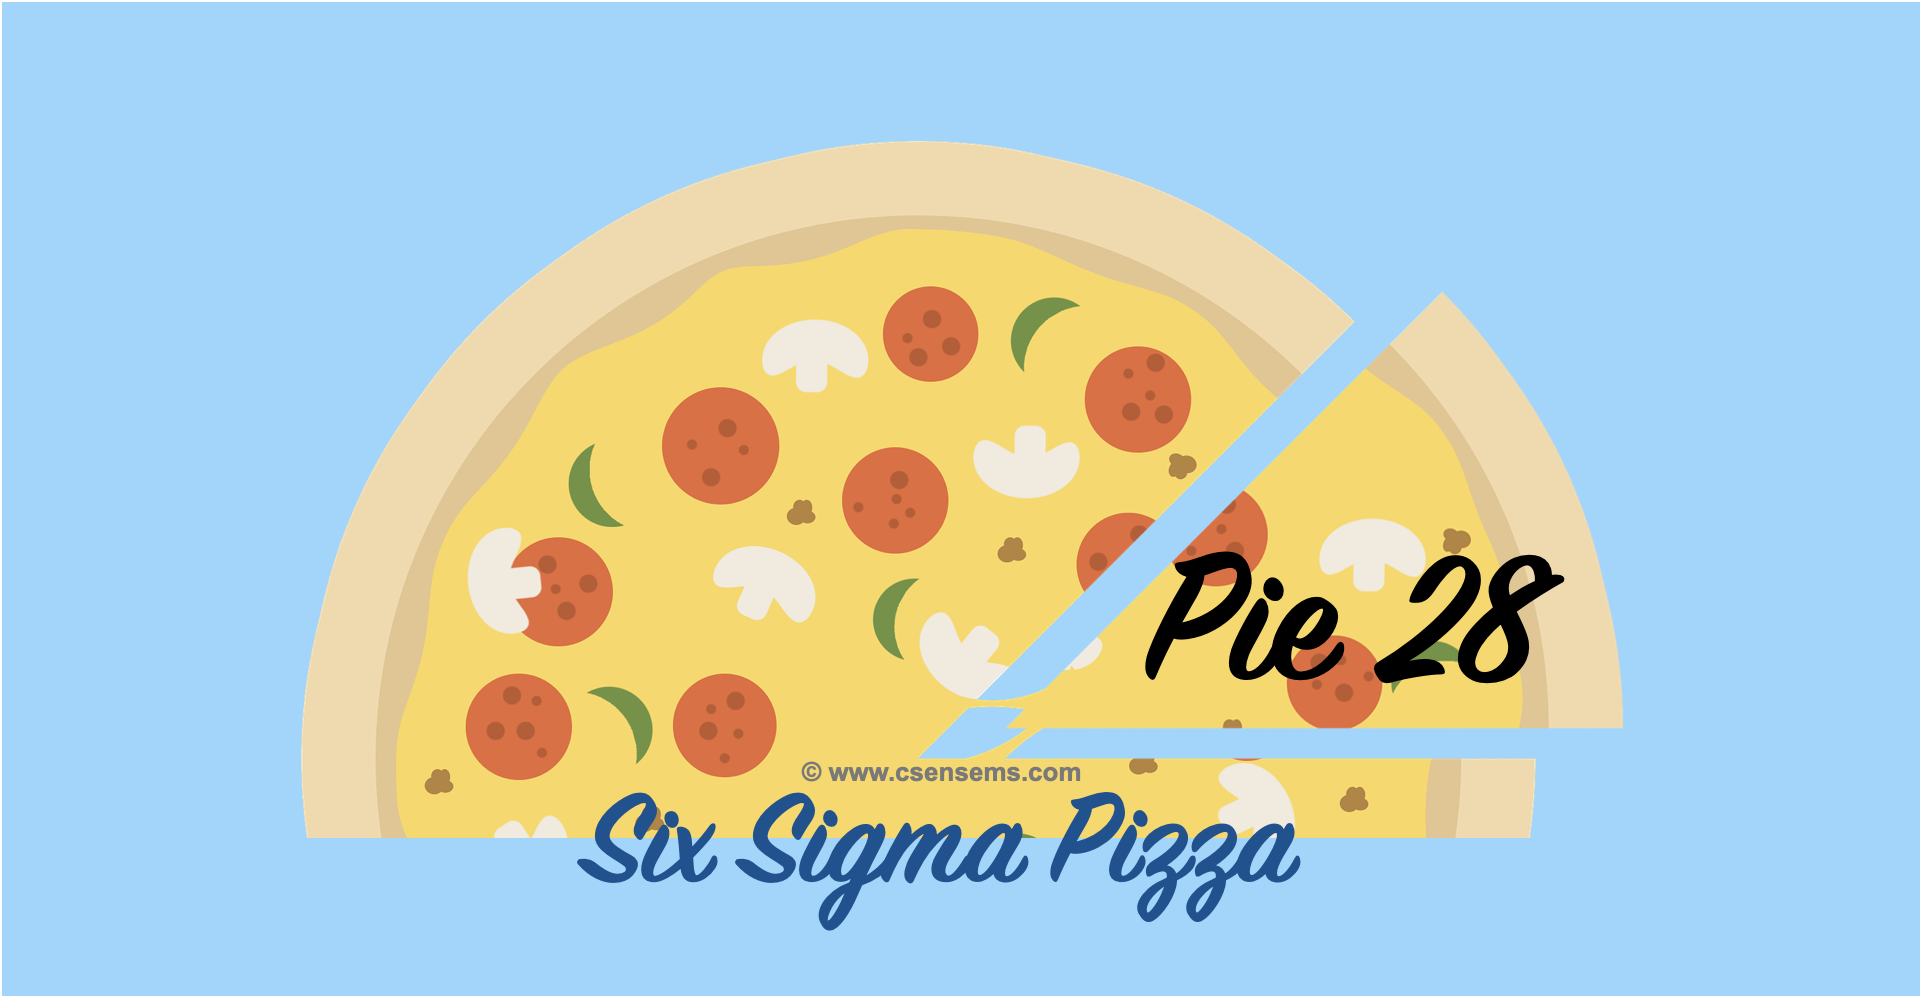 Six Sigma Pizza - Pie 28